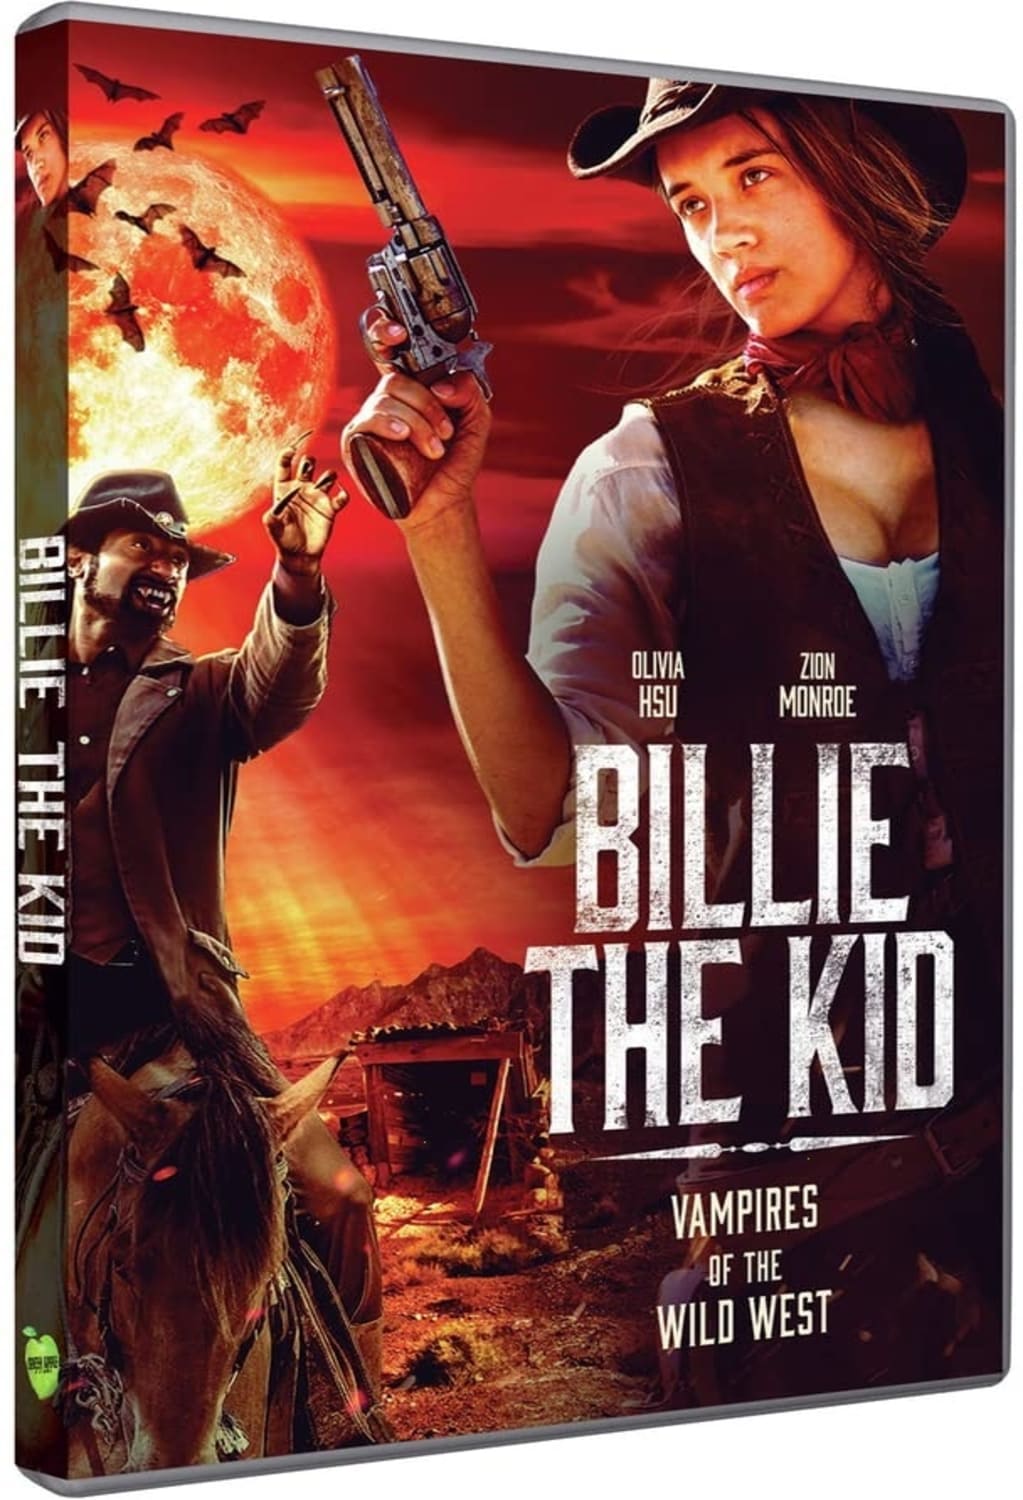 BILLIE THE KID on MovieShack